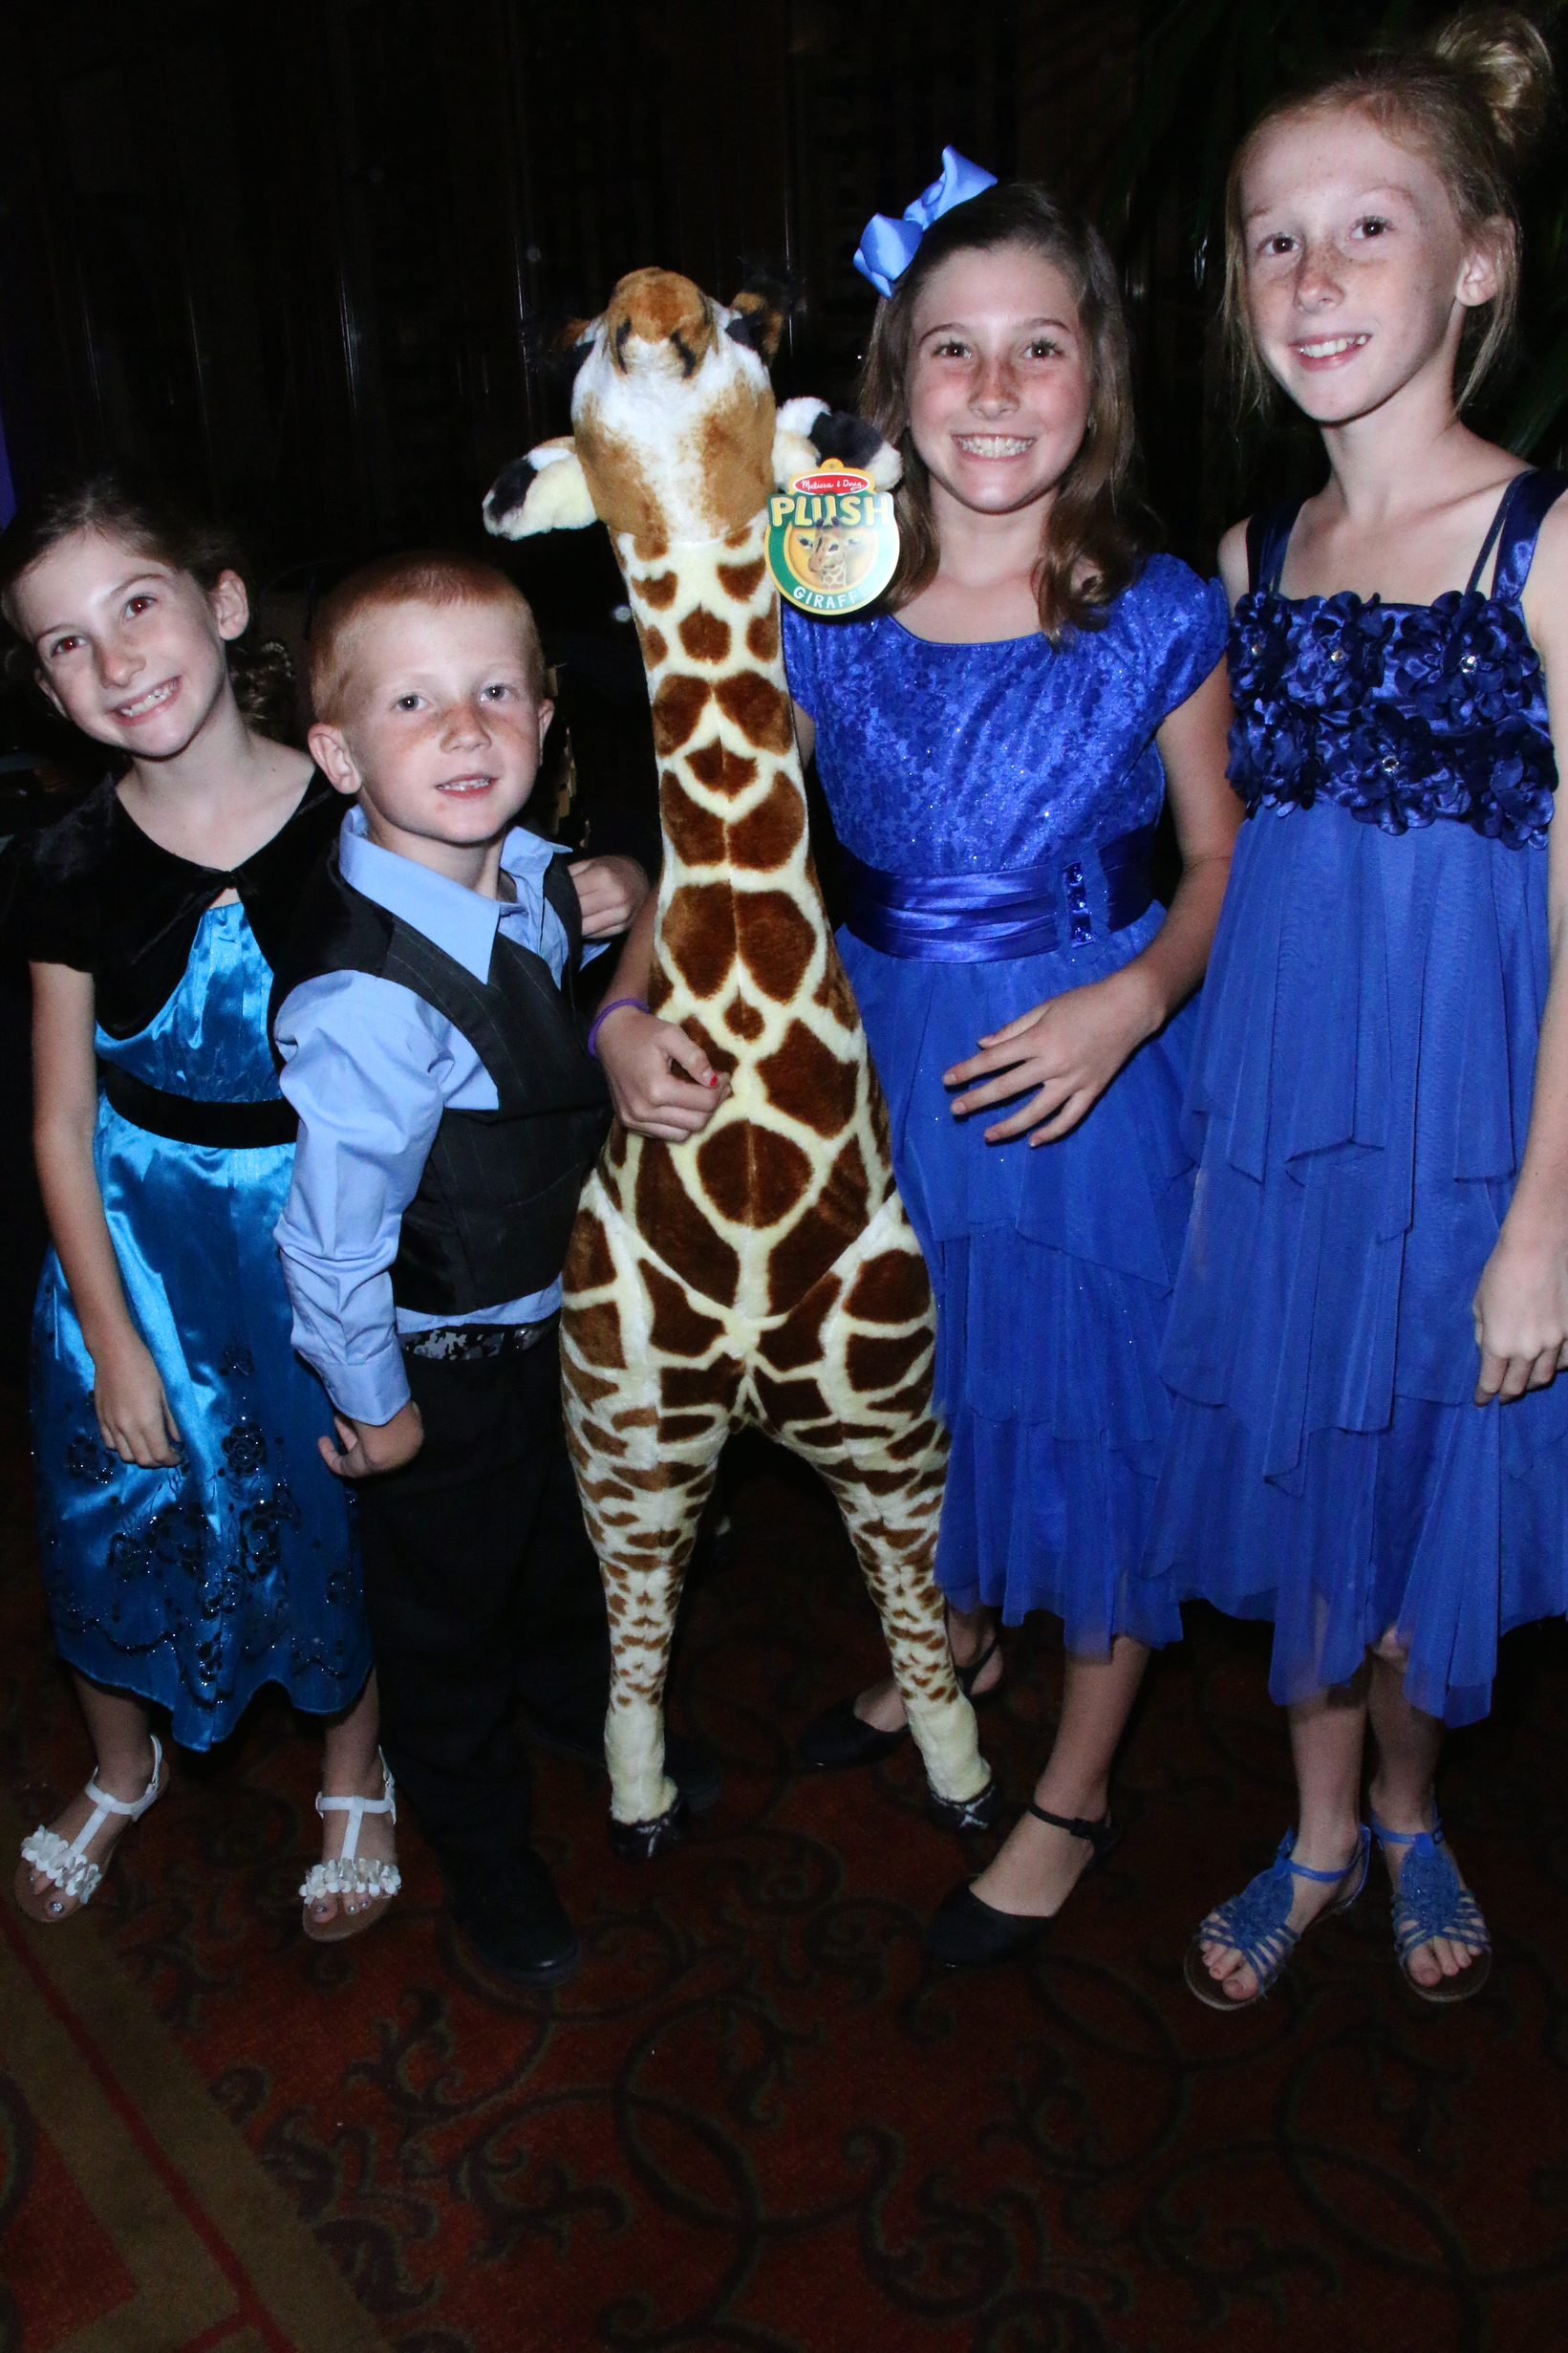 The Martin Children - Brooke, Eli, Zoe, and Sydney Martin - Photo by Bob Delgadillo